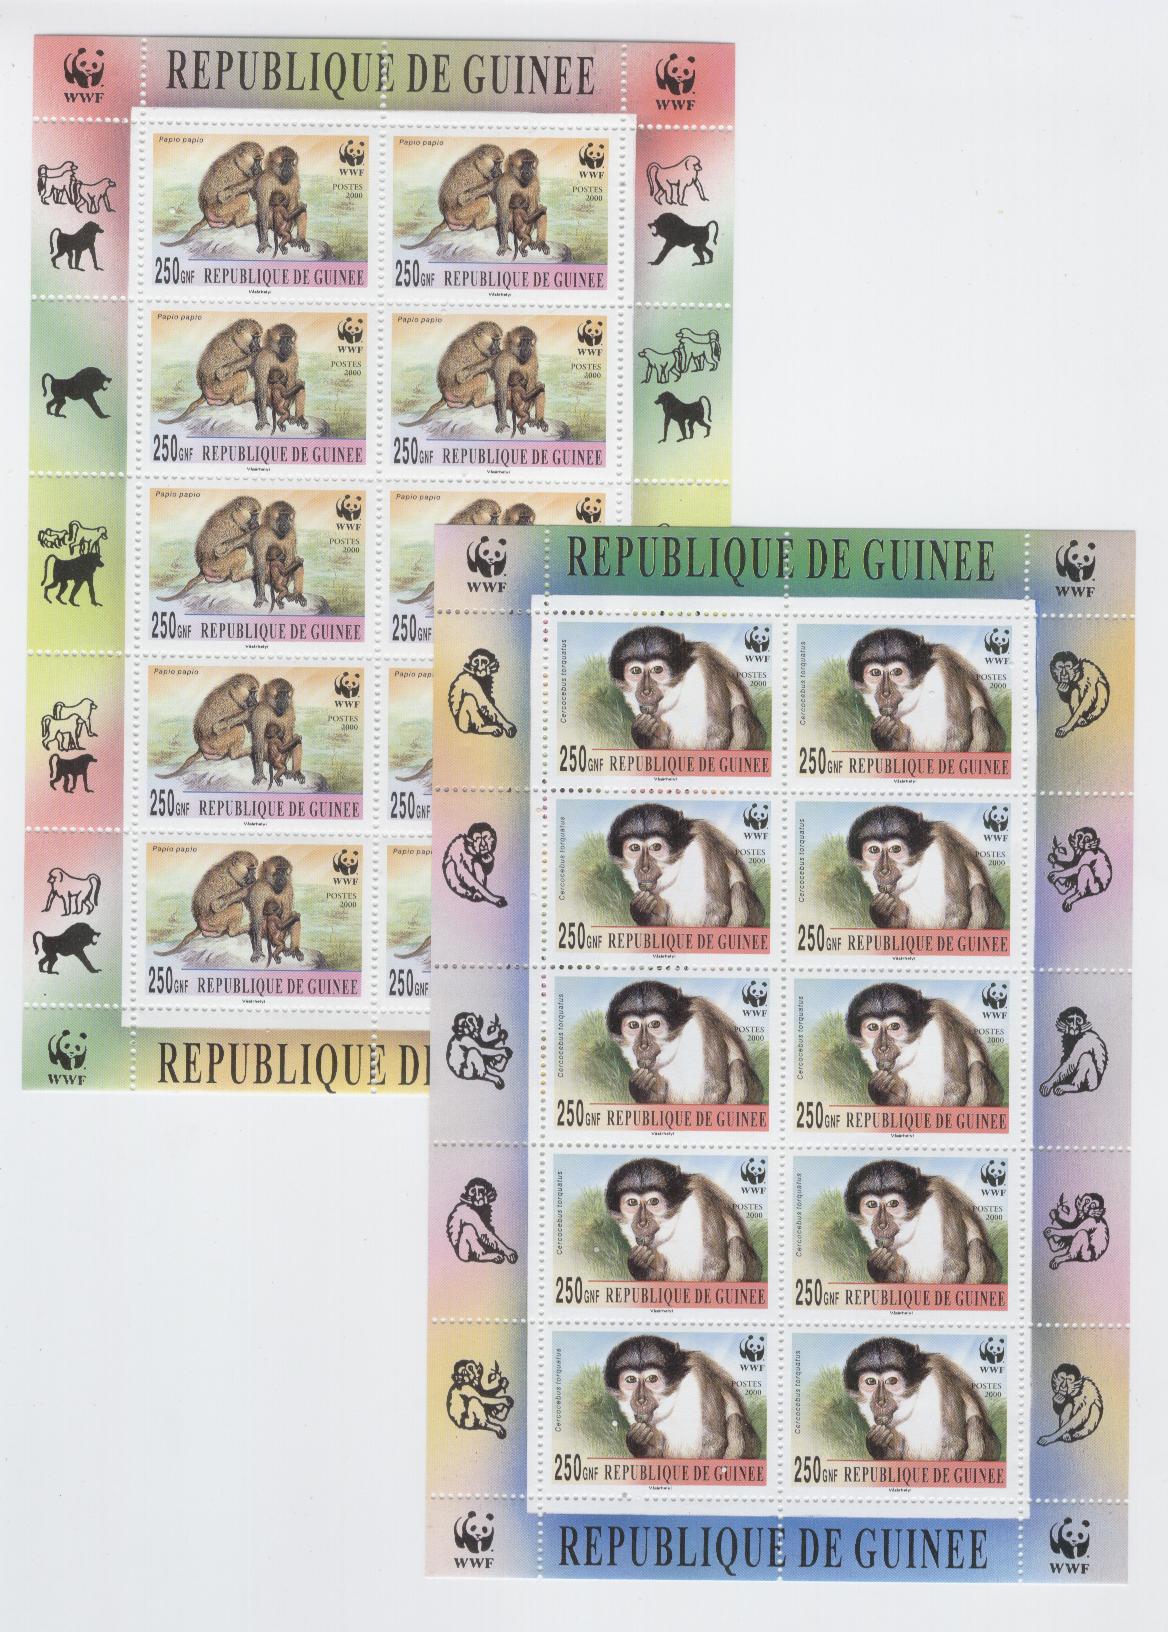 18428 - Guinea - 4 minifogli nuovi: scimmie protette dal WWF - non visibile per intero